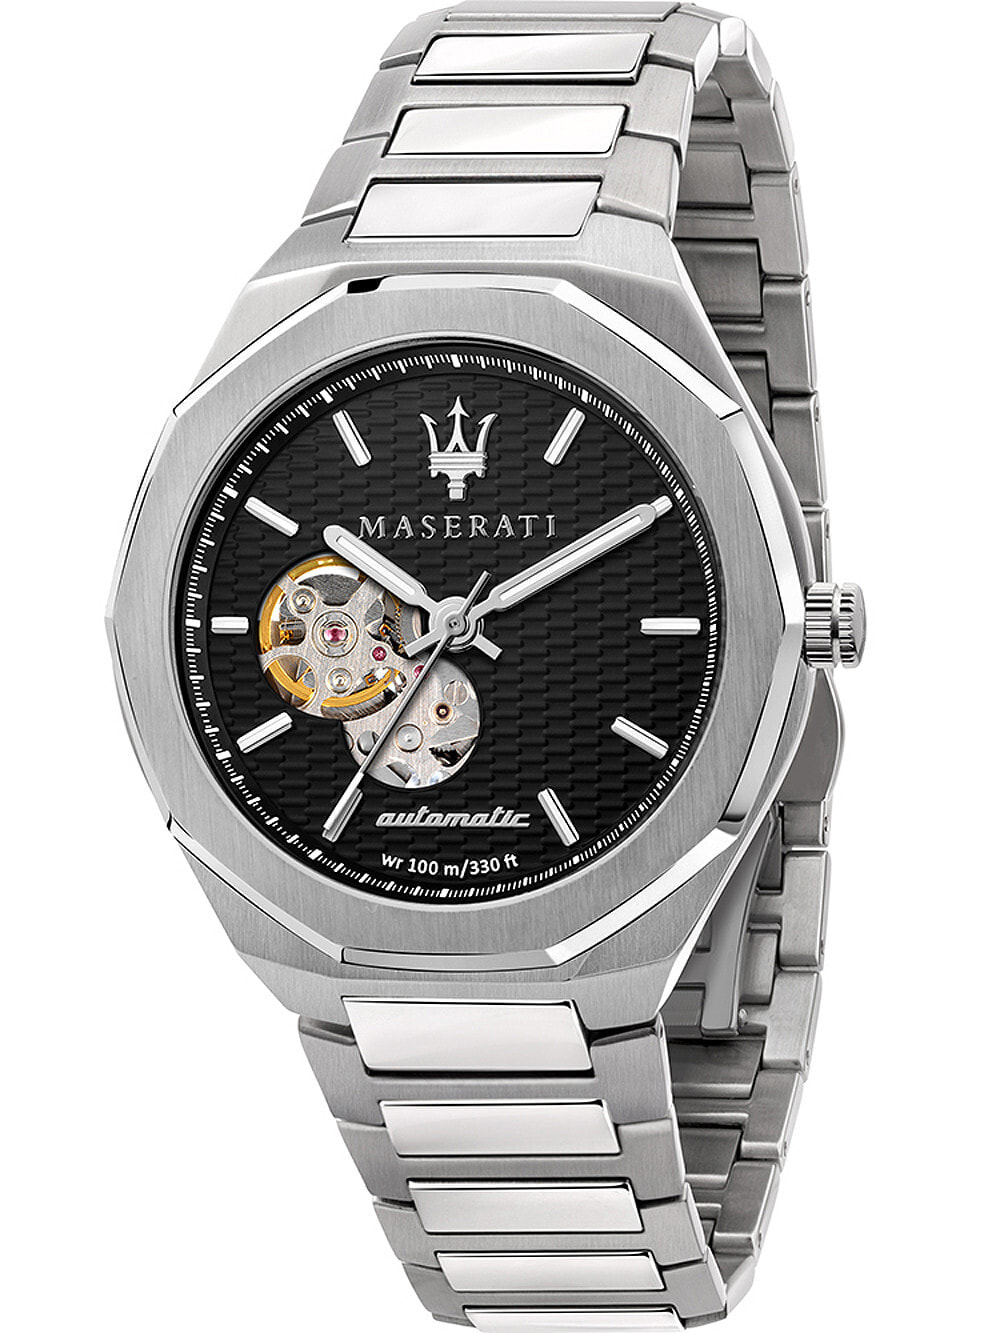 Мужские наручные часы с серебряным браслетом Maserati R8823142002 Stile automatic 42mm 10ATM